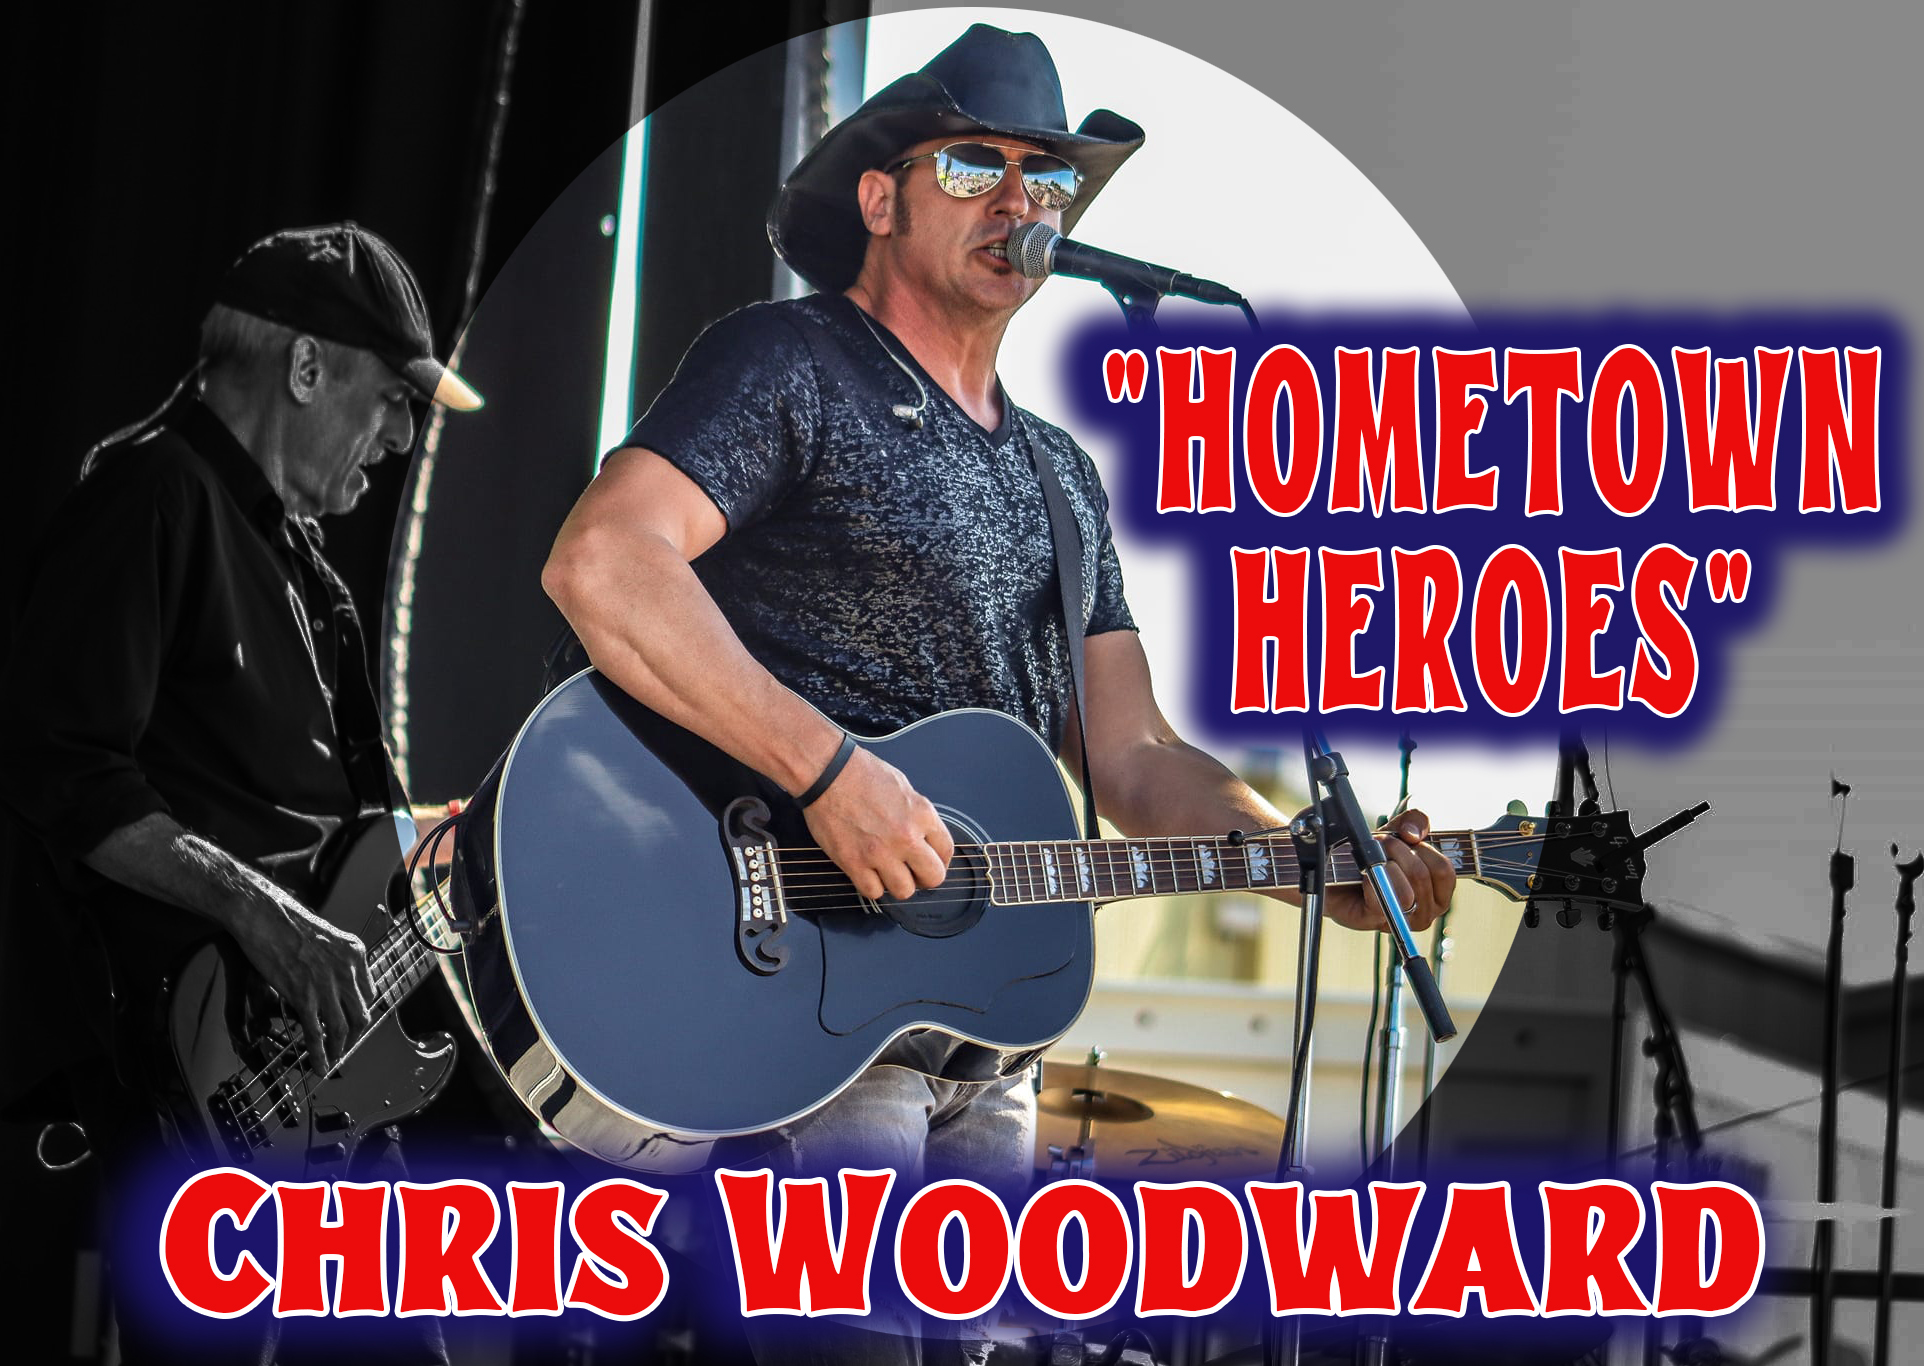 "Hometown Heroes" by Chris Woodward.